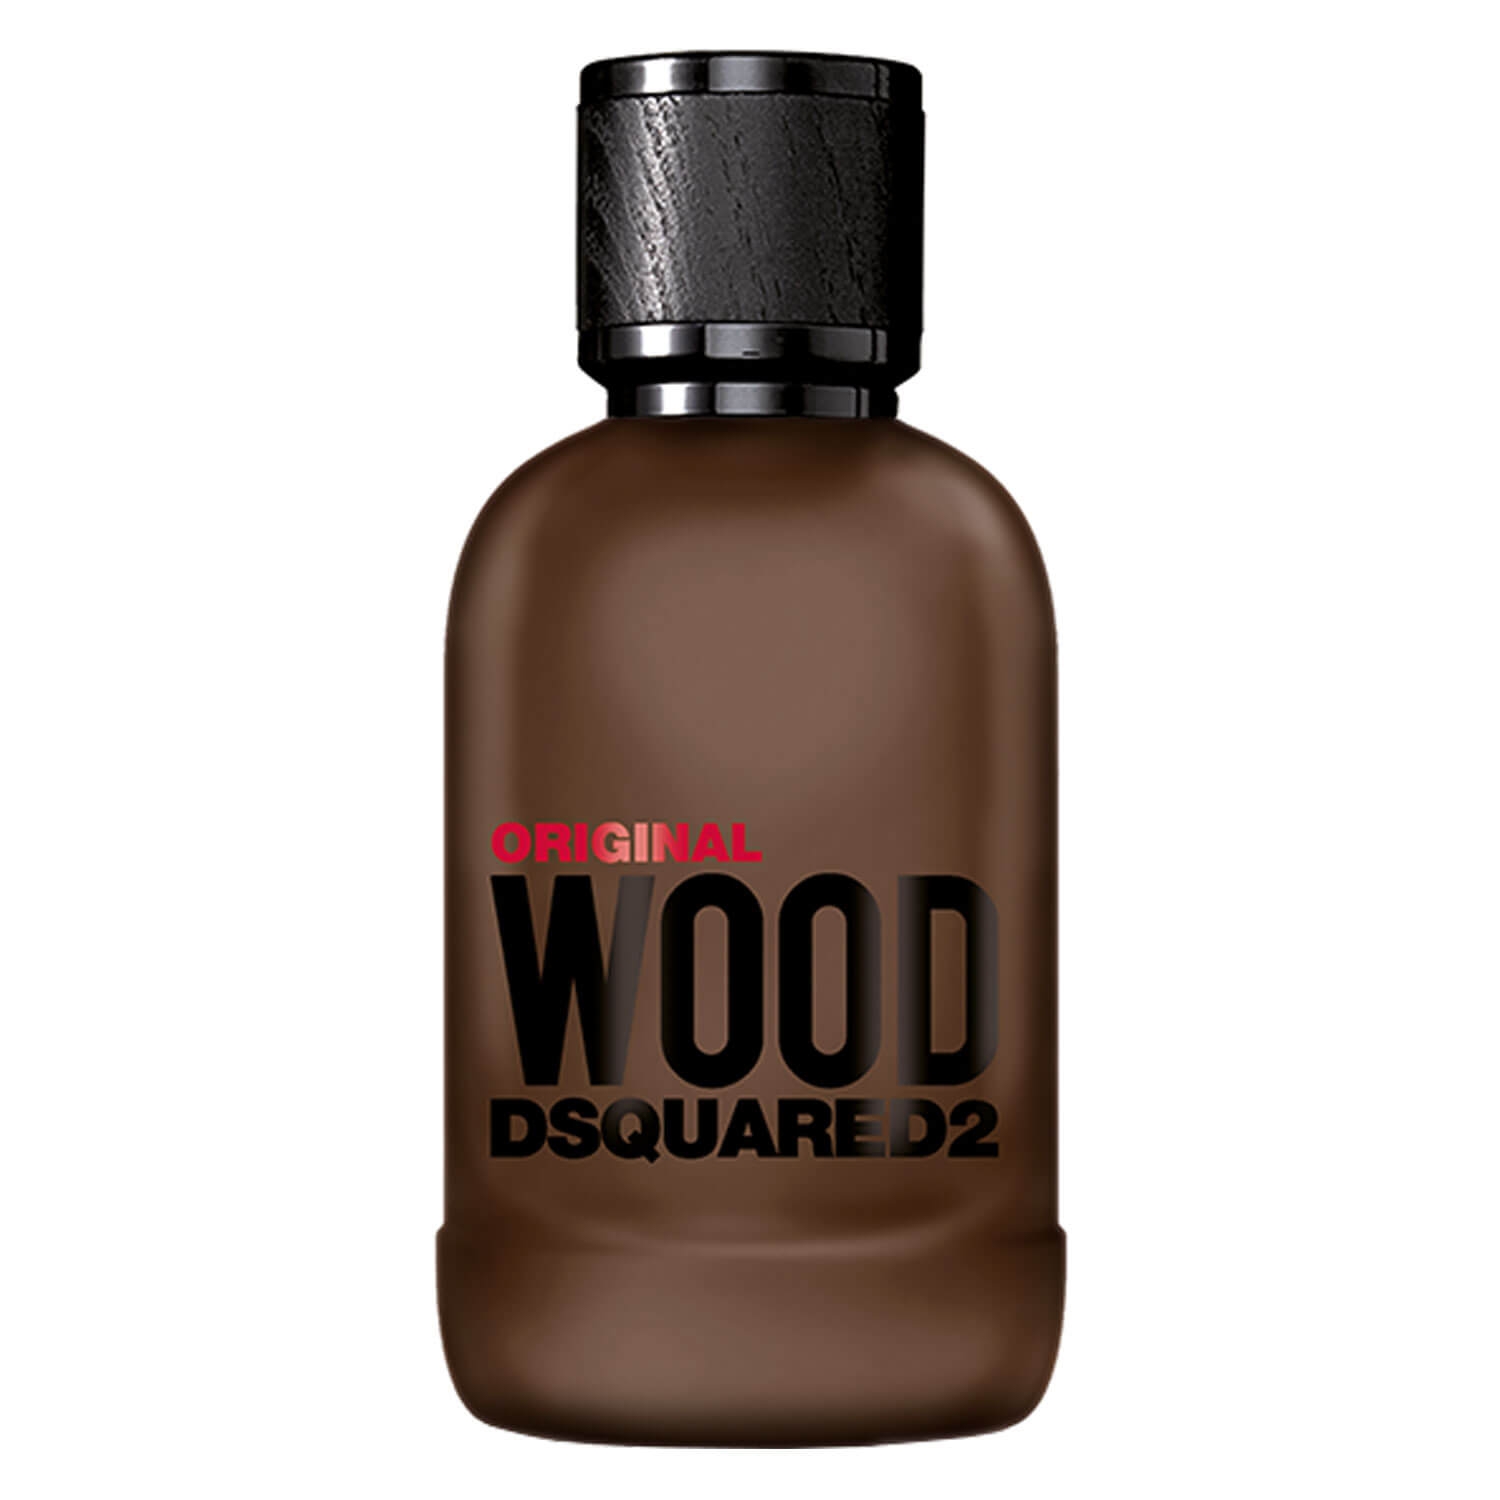 Produktbild von DSQUARED2 WOOD - Original Wood Eau de Parfum